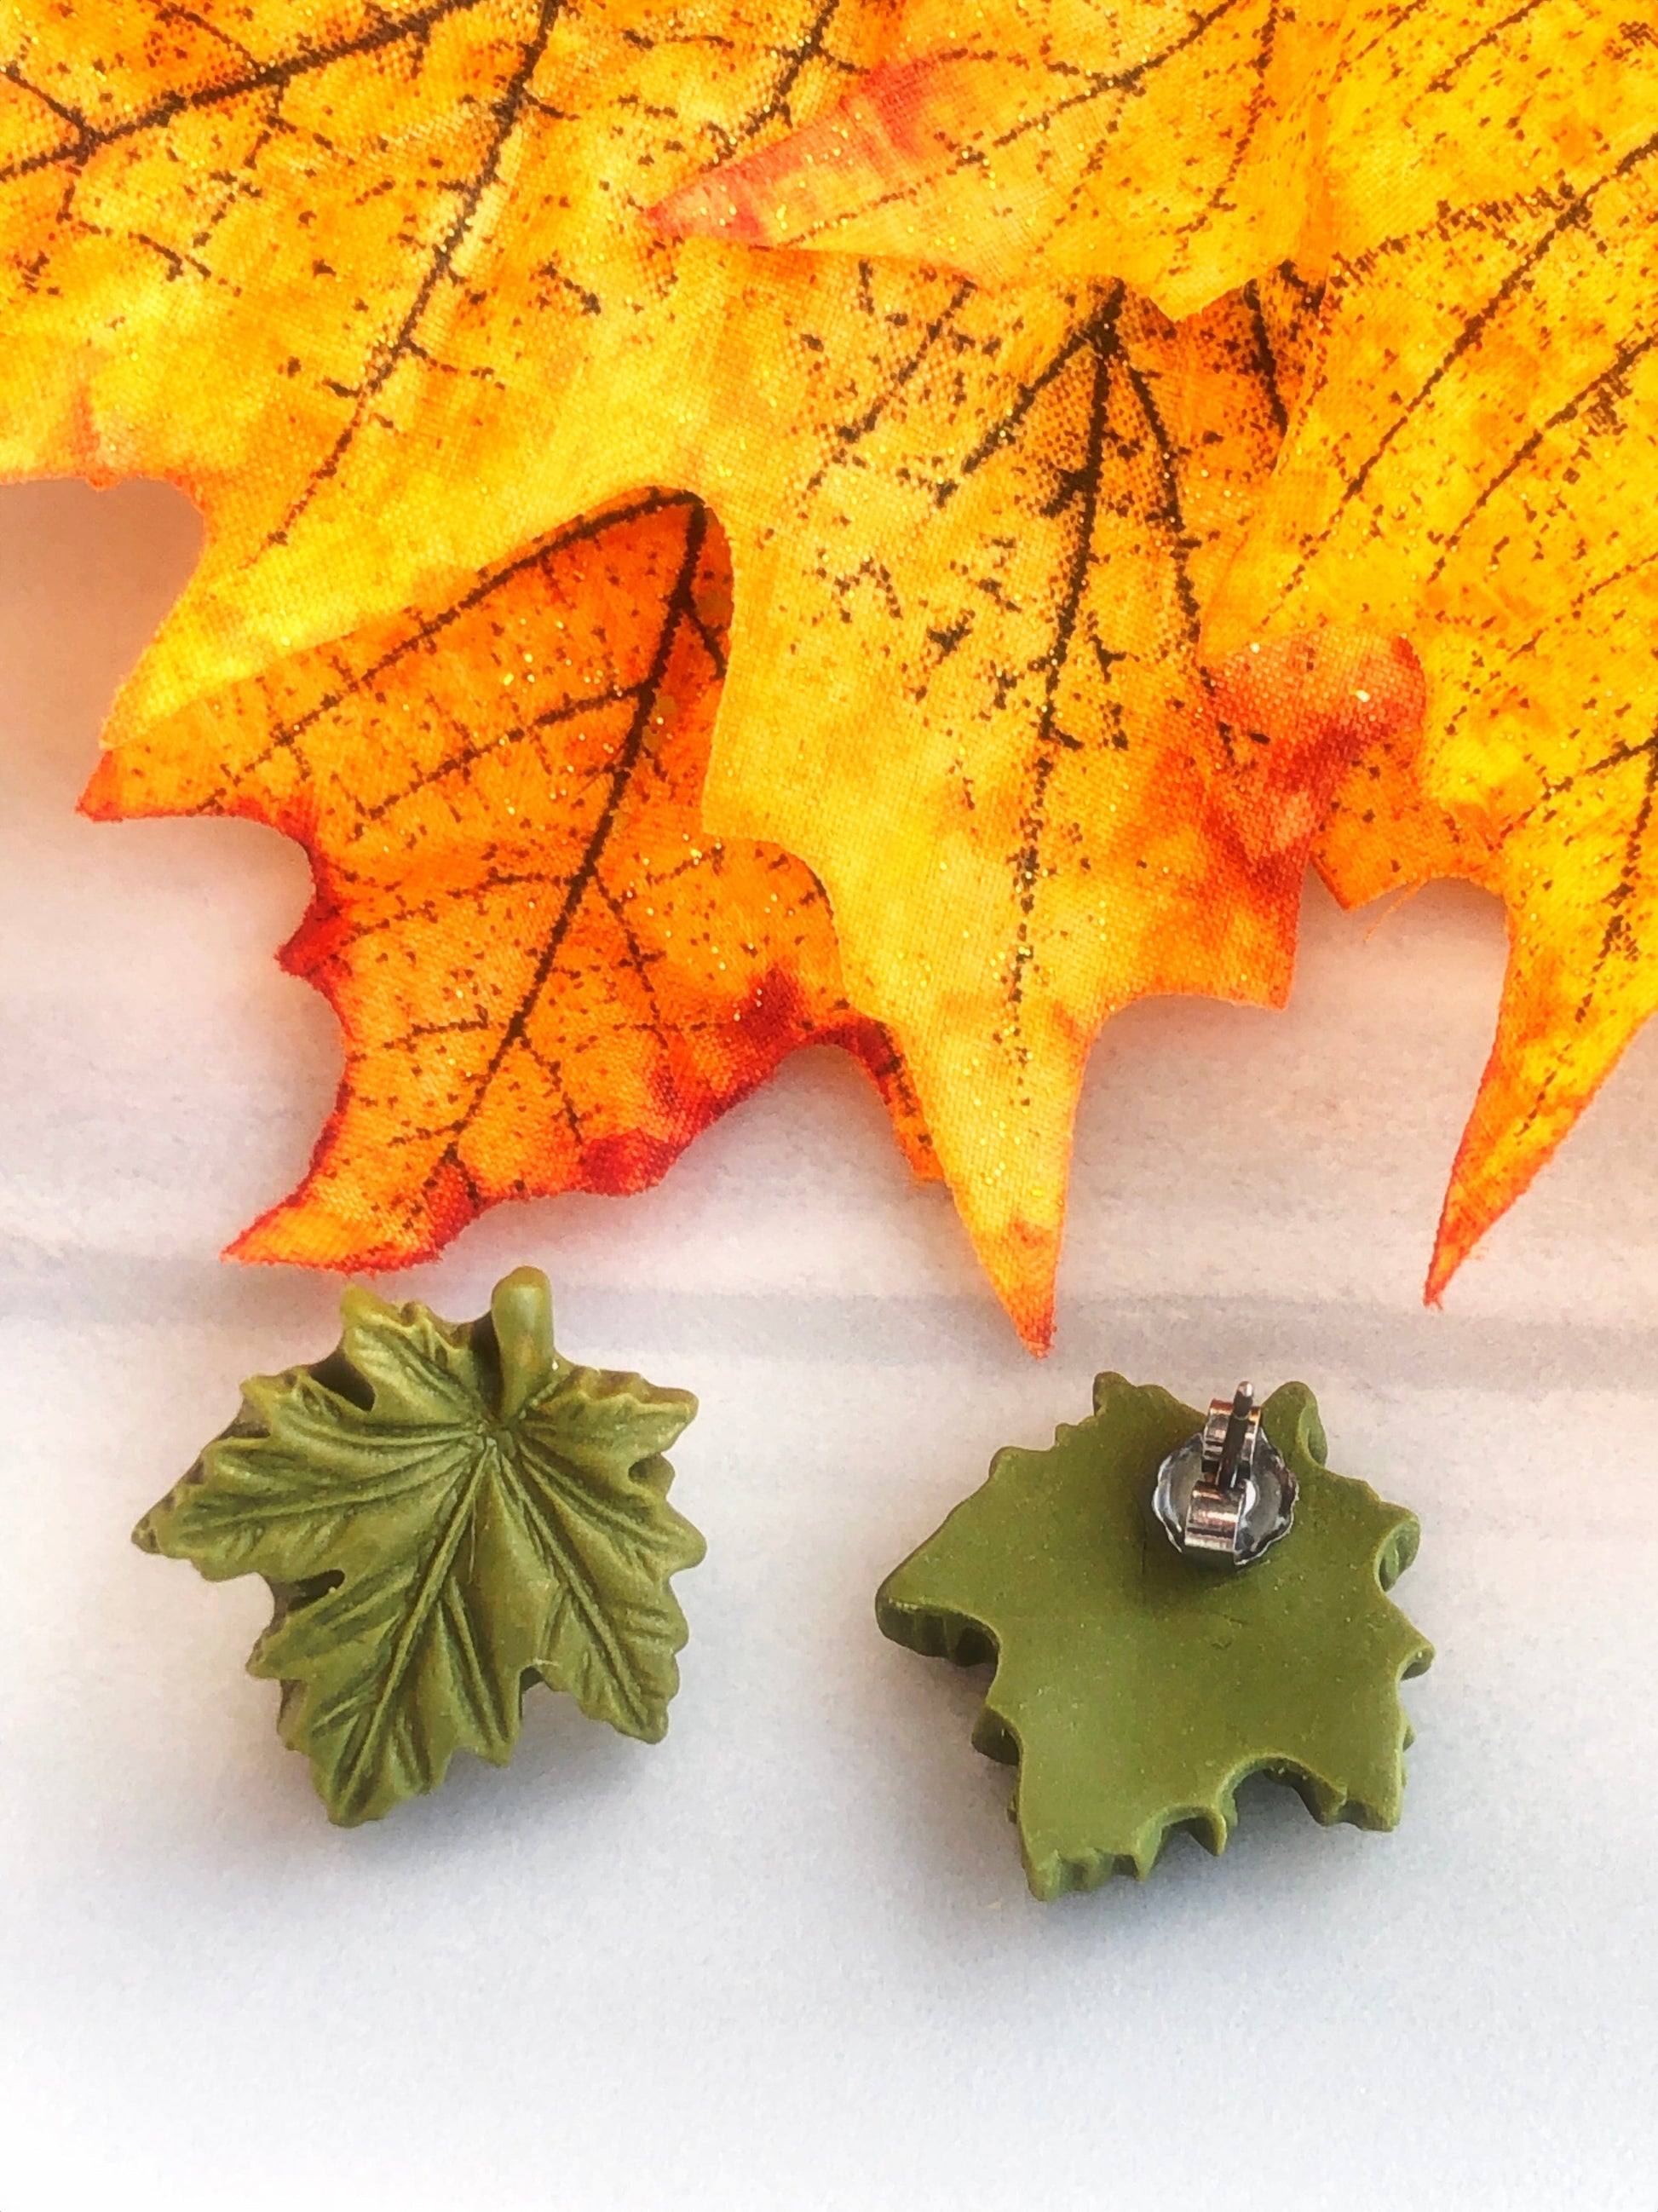 Earrings Maple Leaf Stud Earrings Maple Leaf Stud Earrings, titanium stud earrings, fall maple leaf earrings